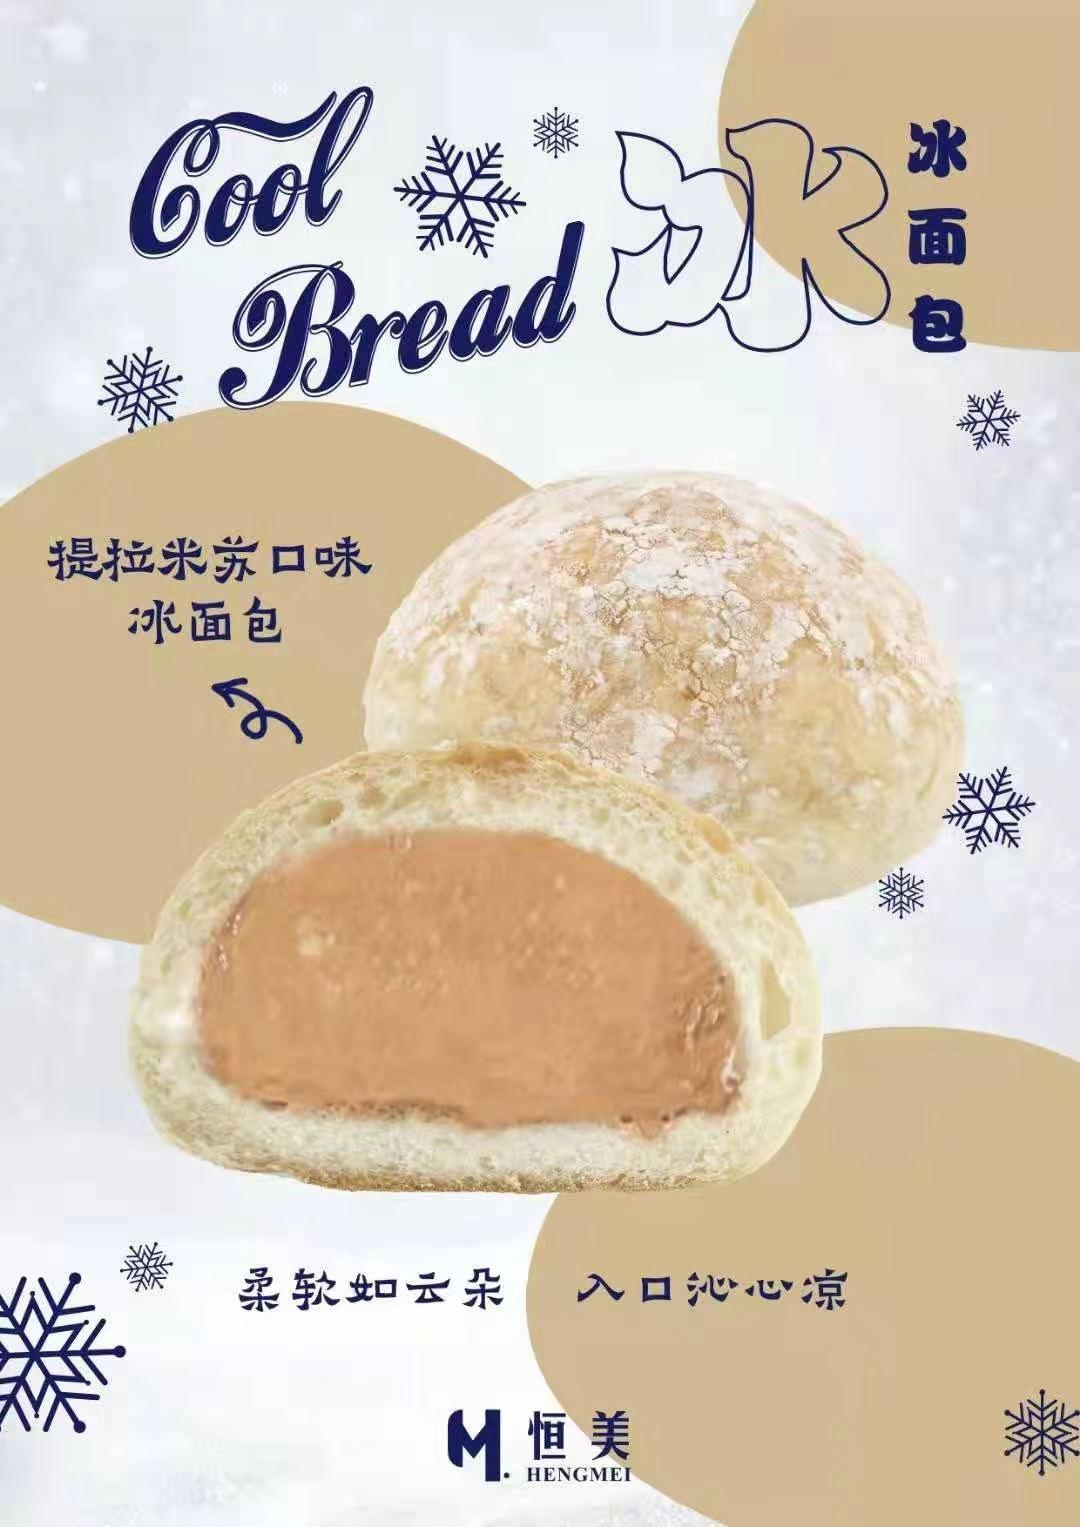 河南恒美食品推出夏日新品——冰面包,给你不一样的面包口感 !